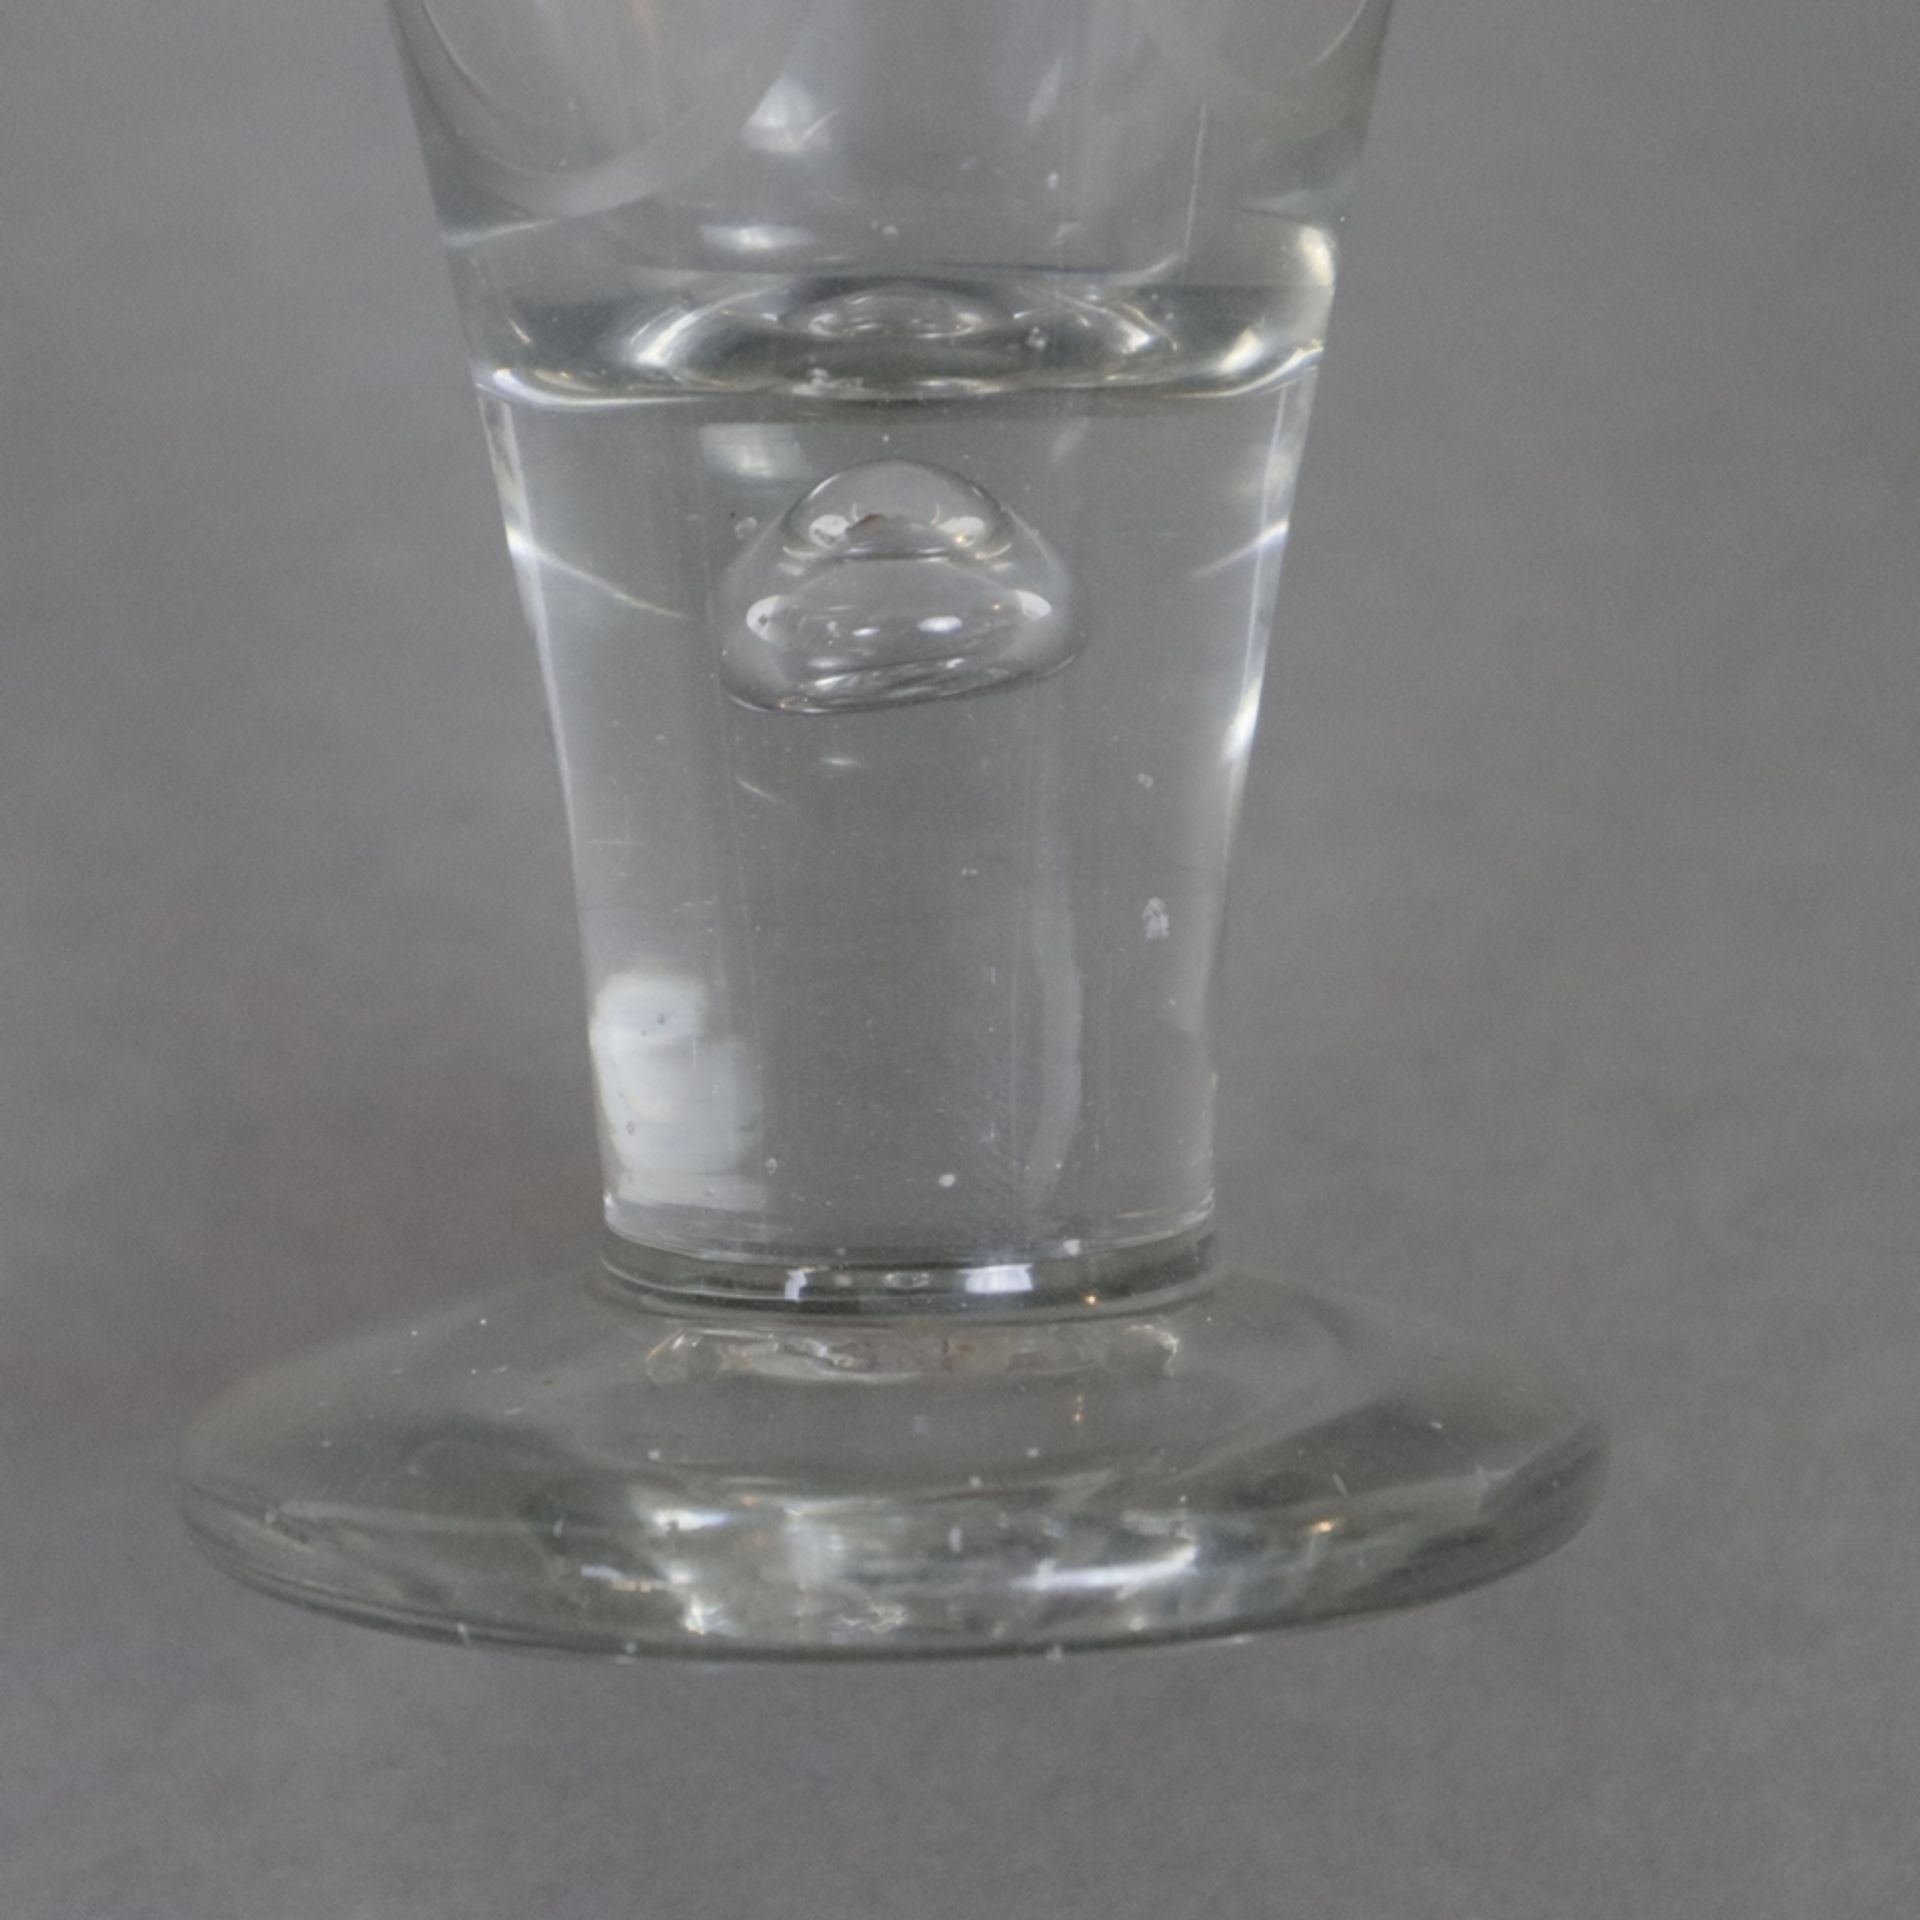 Rustikales Trichterglas - farbloses Glas, klassische Trichterform mit großer eingestochener Luftbla - Bild 3 aus 5